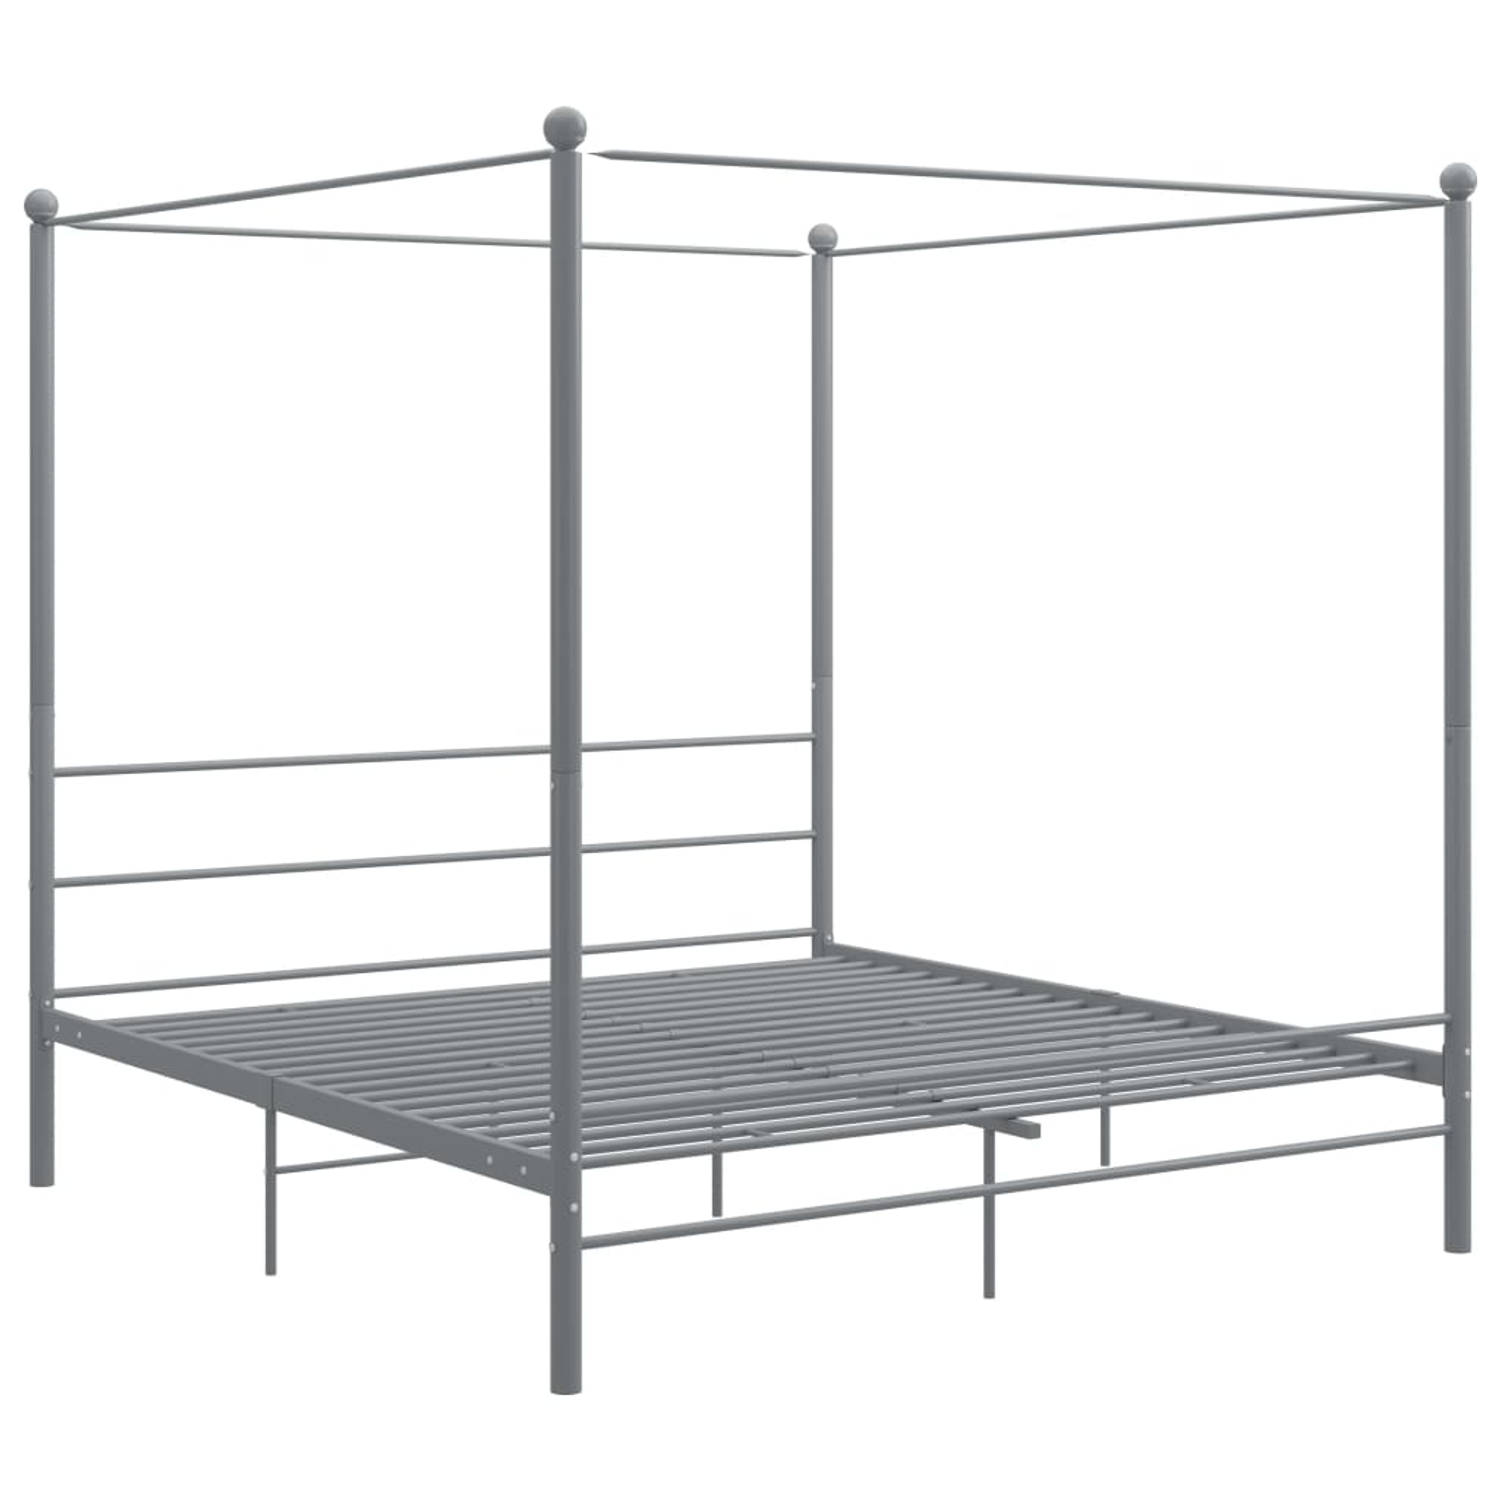 The Living Store Hemelbedframe metaal grijs 180x200 cm - Bedframe - Bedframe - Bed Frame - Bed Frames - Bed - Bedden - Metalen Bedframe - Metalen Bedframes - 2-persoonsbed - 2